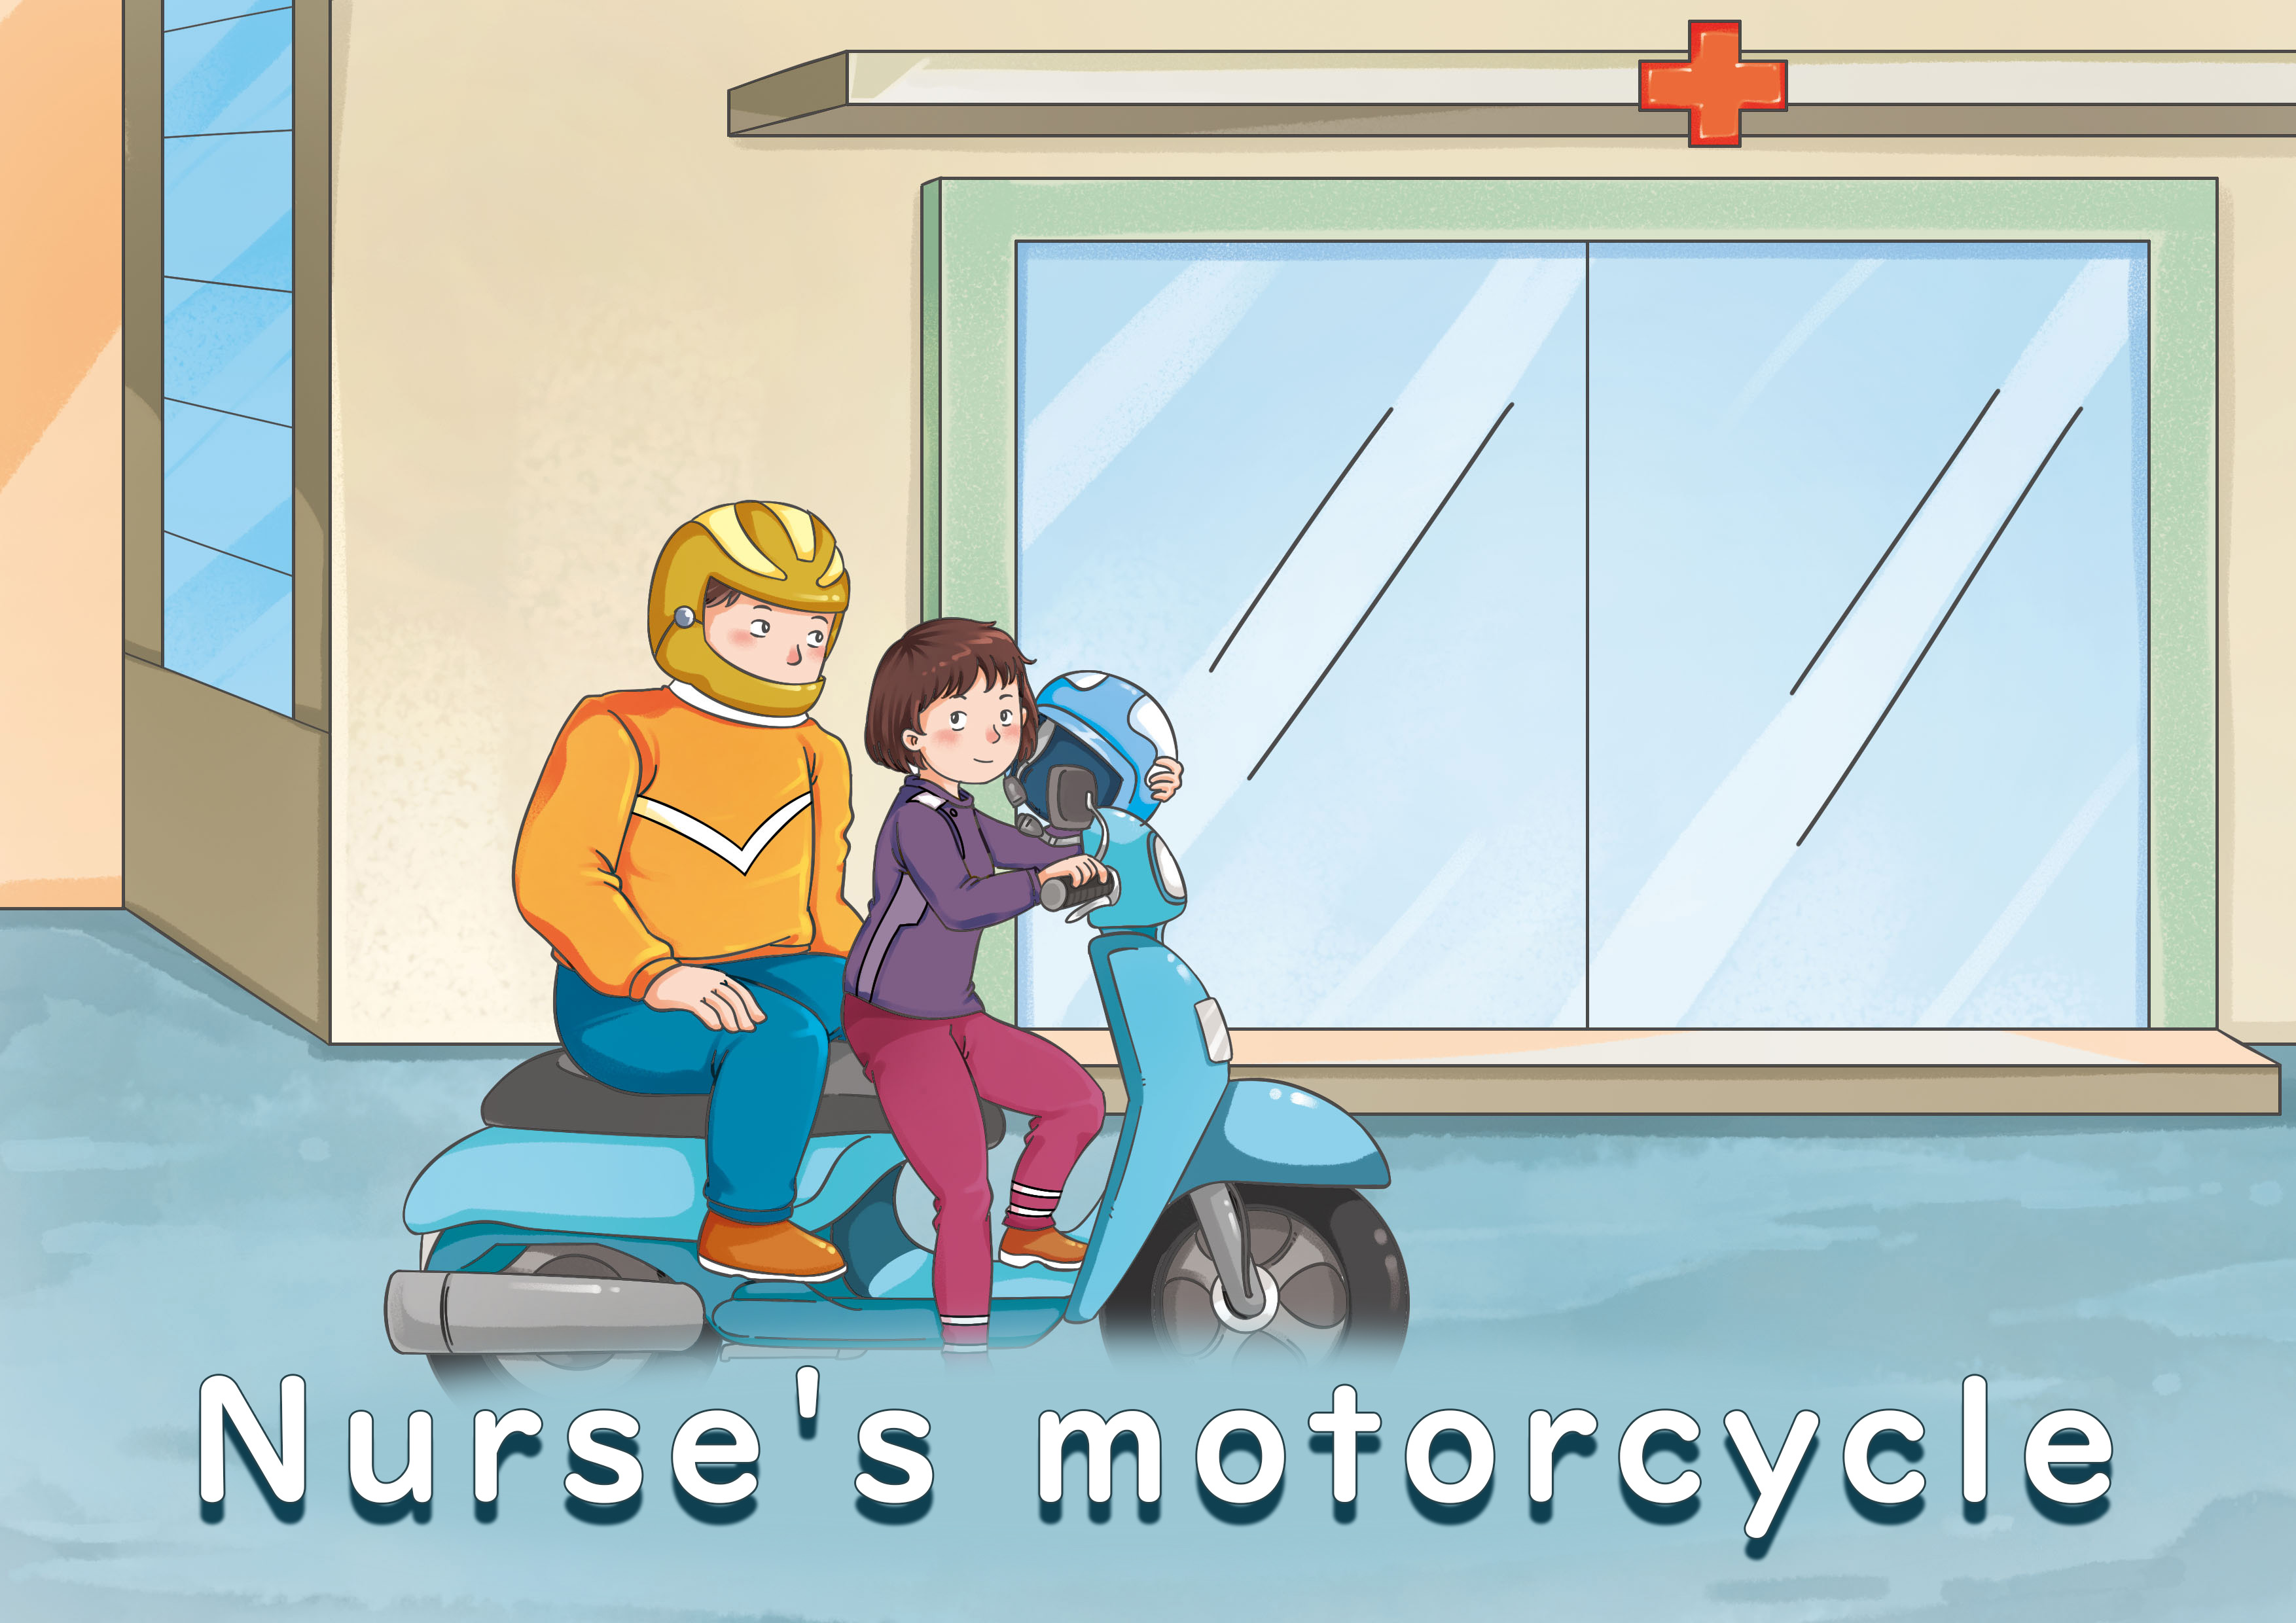 Nurse's motorcycle